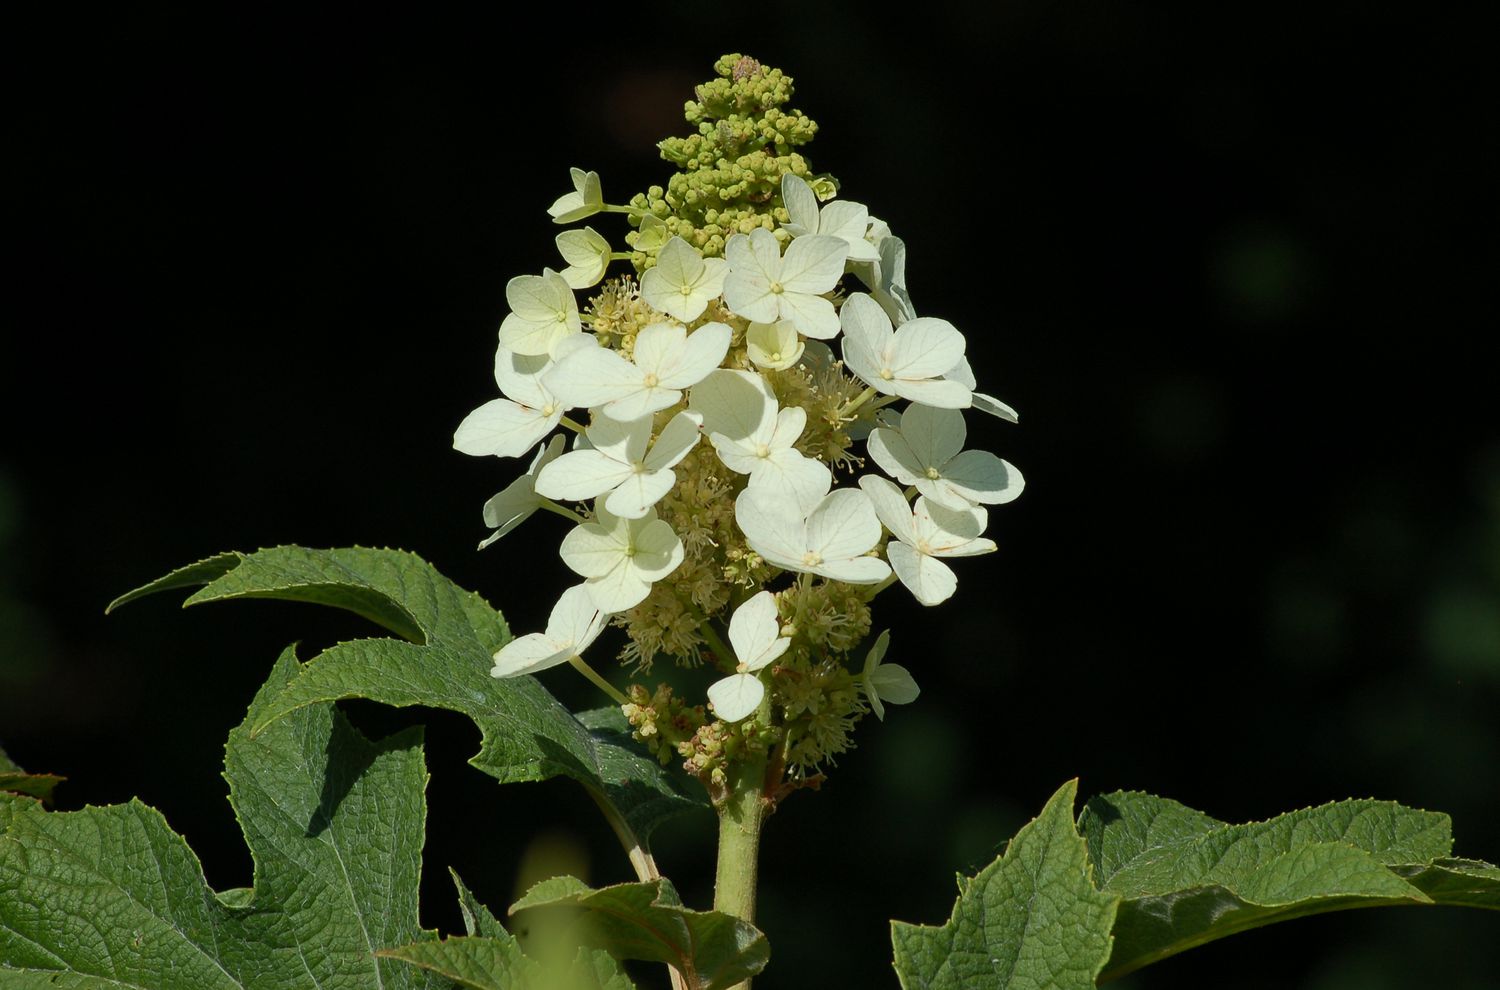 Weißer Blütenkopf des blühenden Eichenblatt-Hortensienstrauchs.